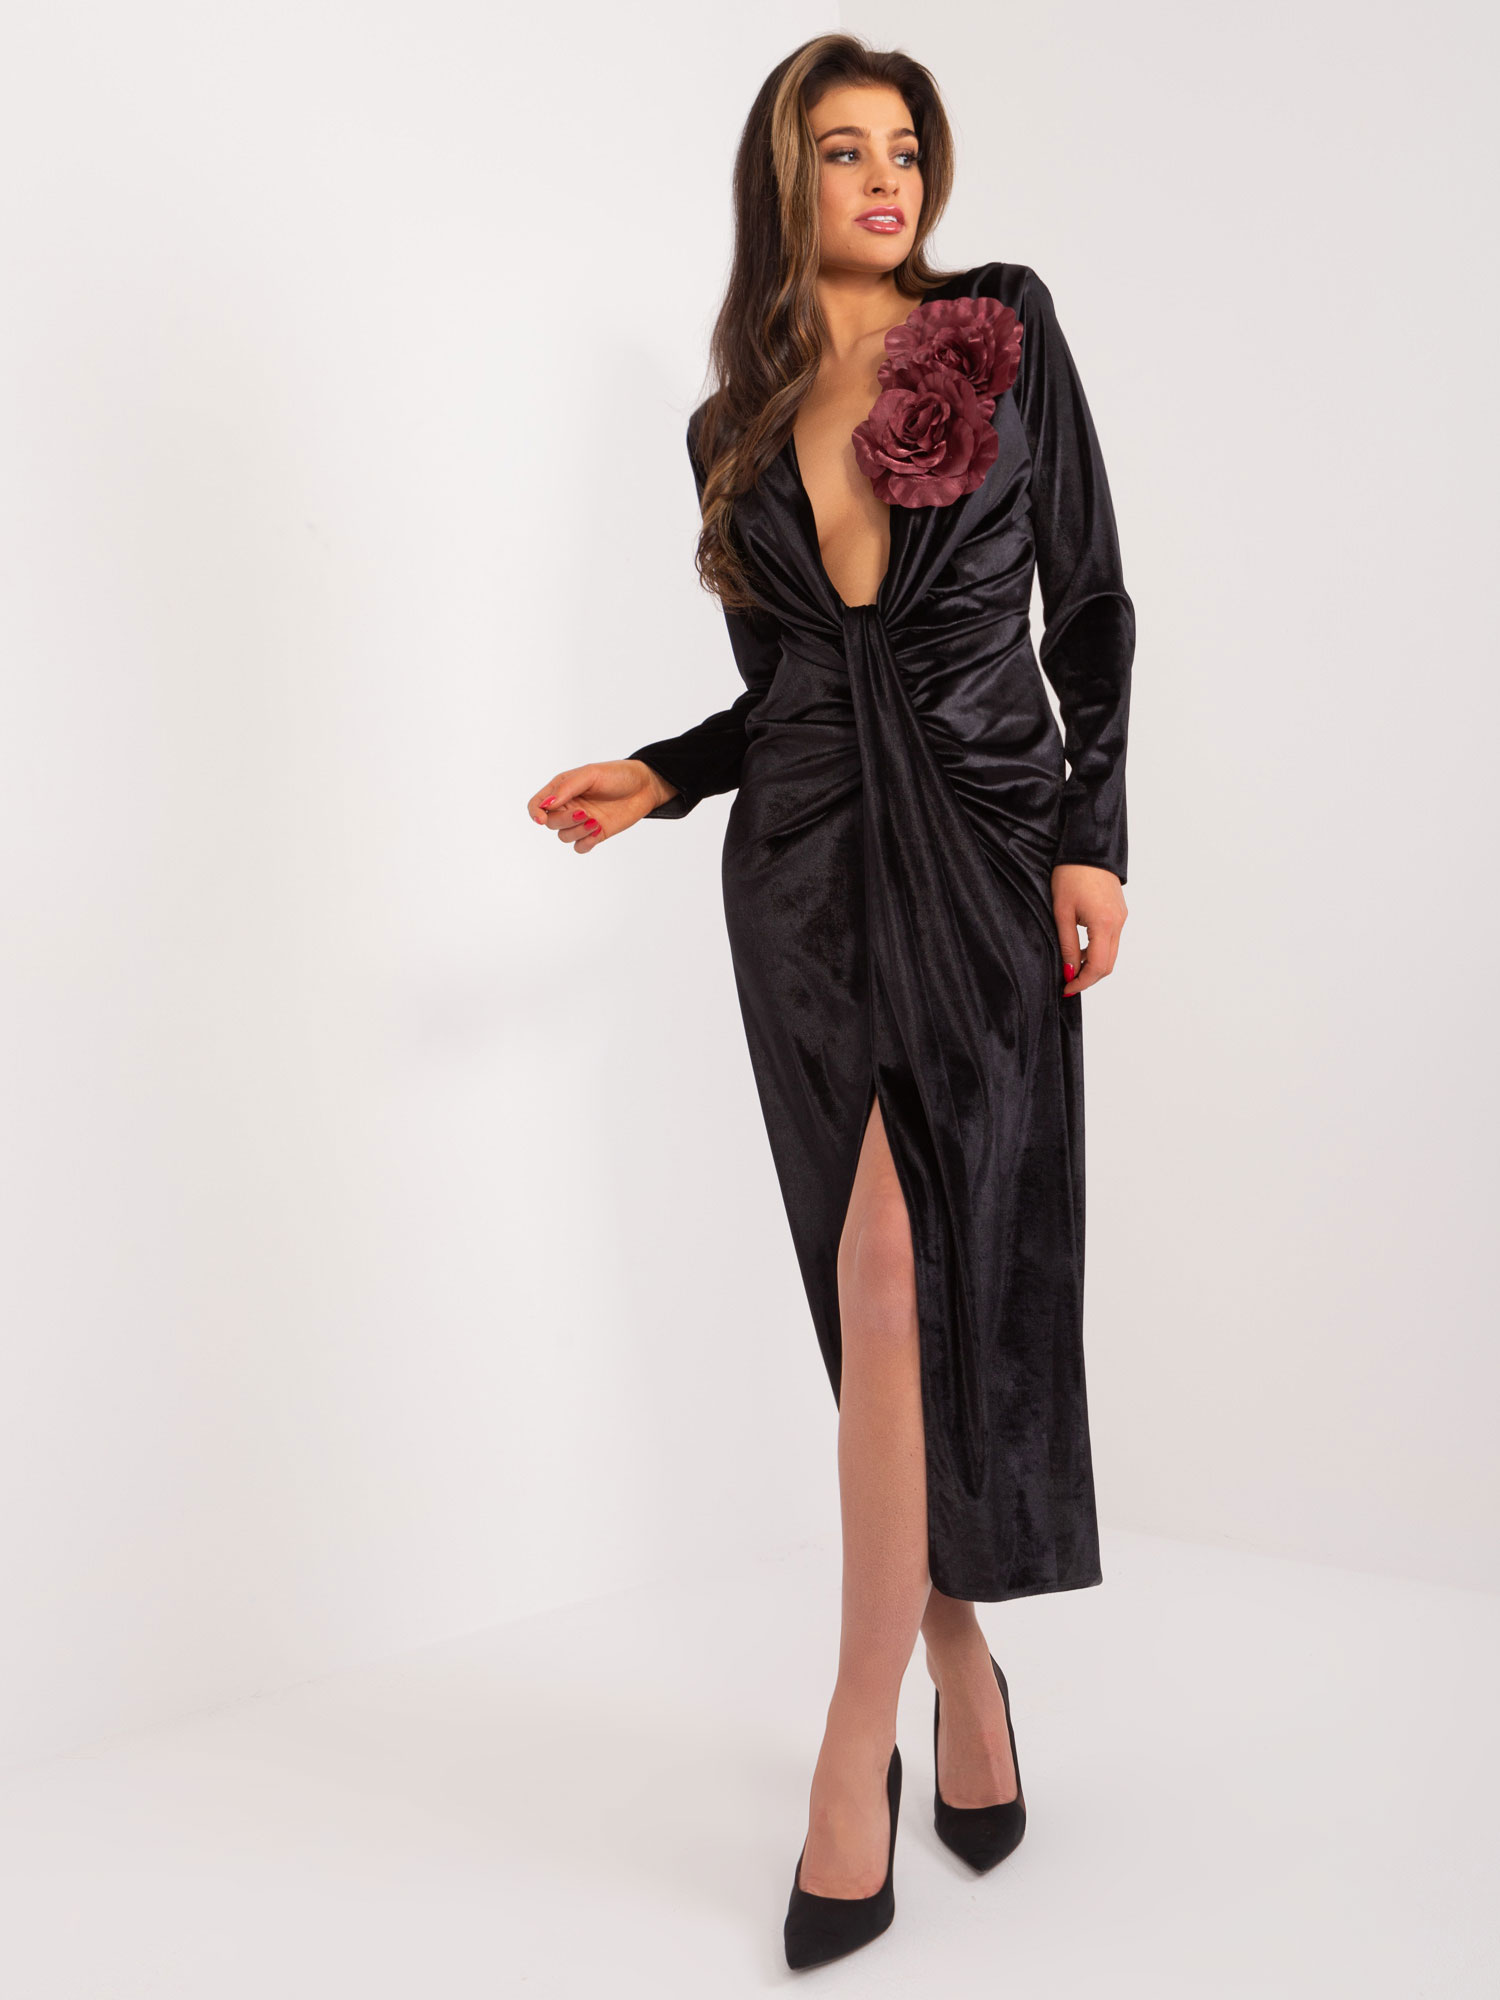 Black velvet evening dress with slit